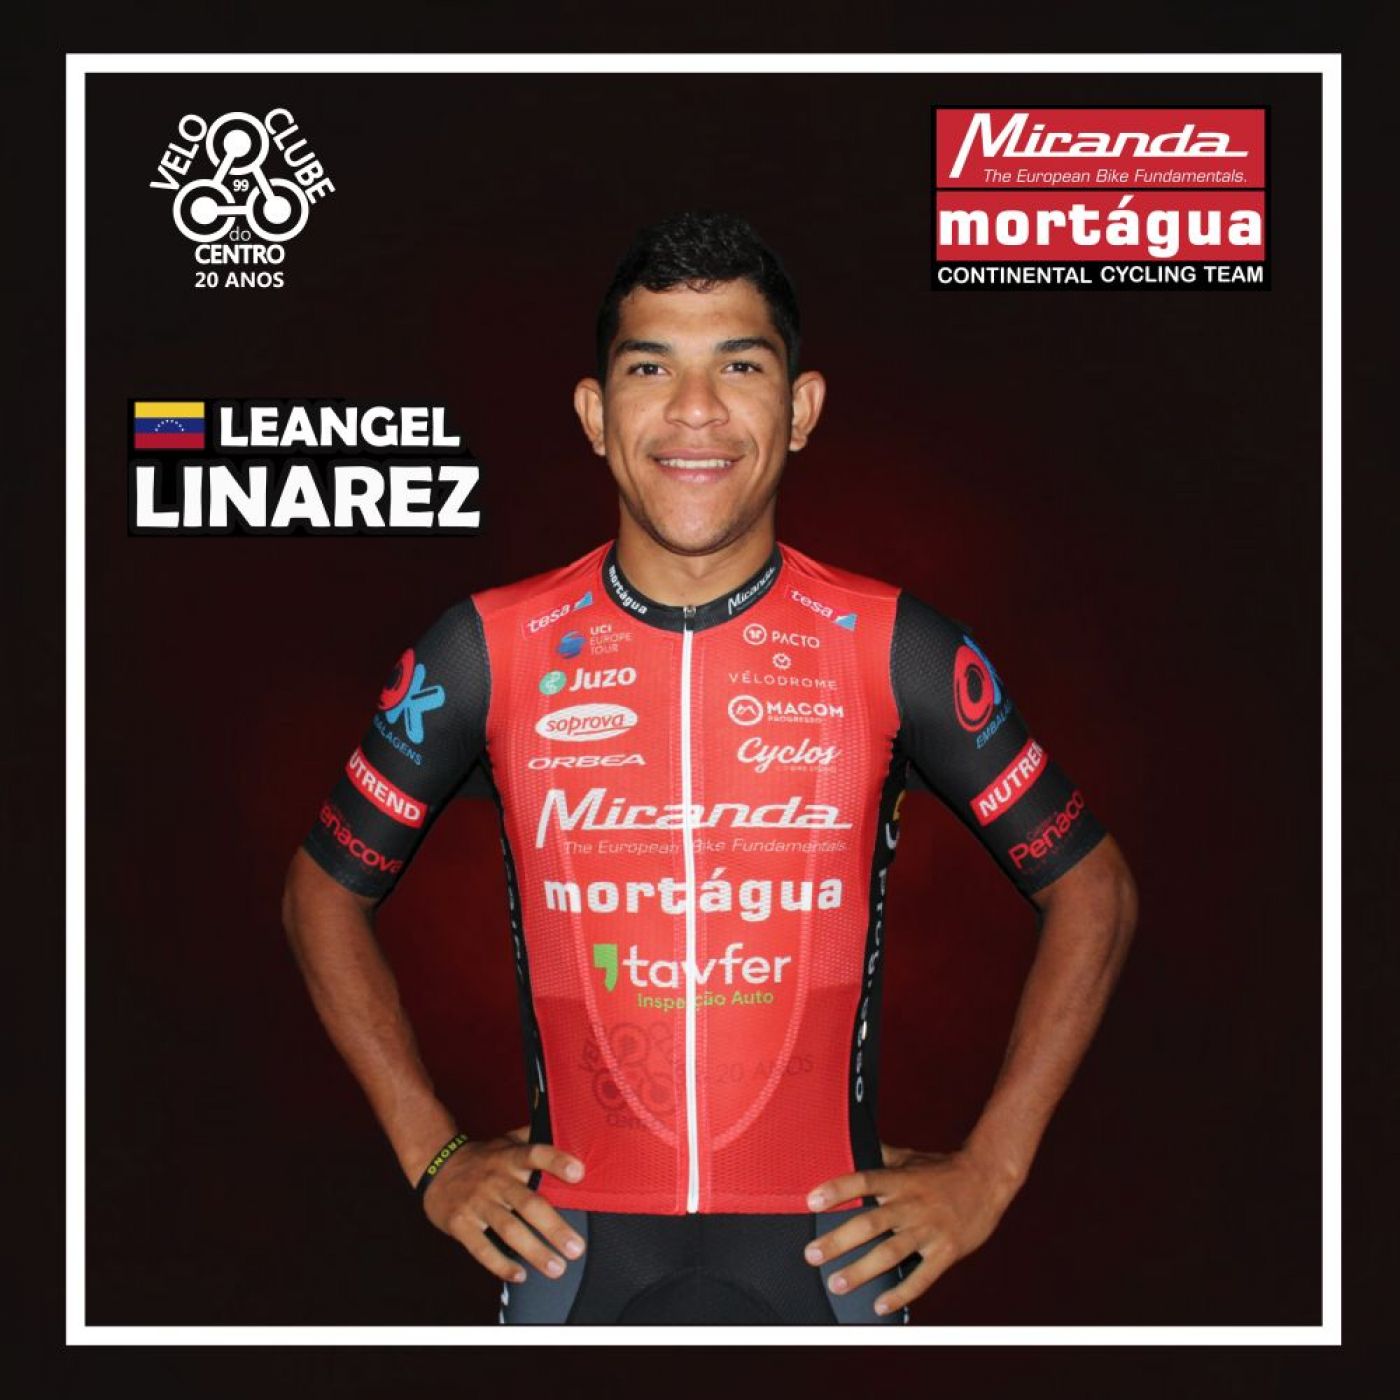 Leangel Linarez é o novo reforço da Miranda-Mortágua para a Volta a Portugal e restante temporada